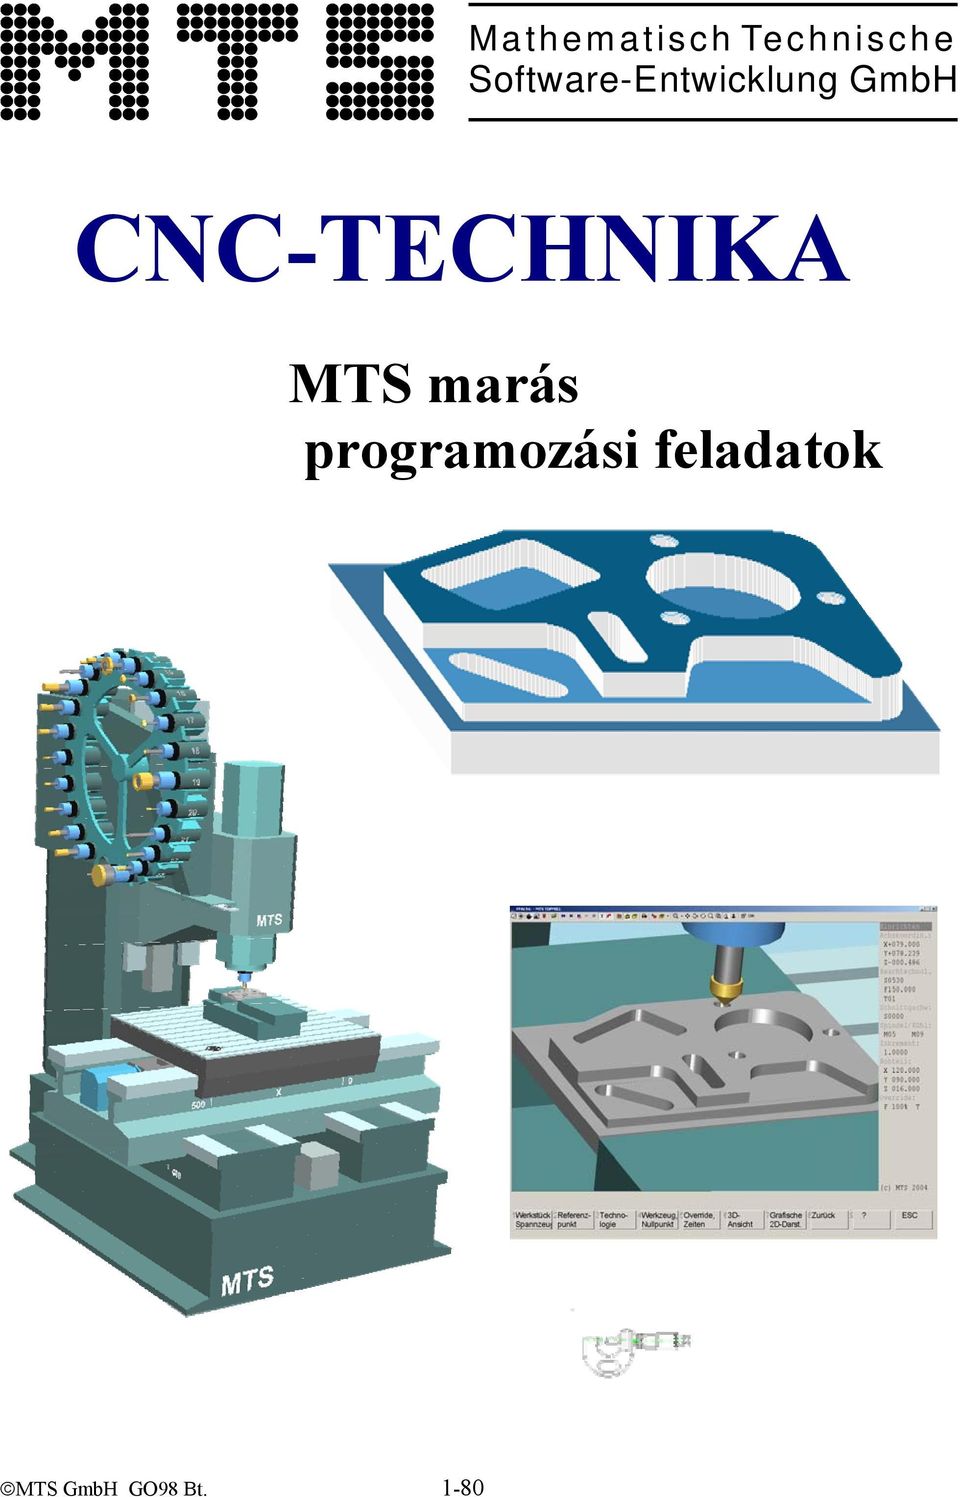 CNC-TECHNIKA MTS marás